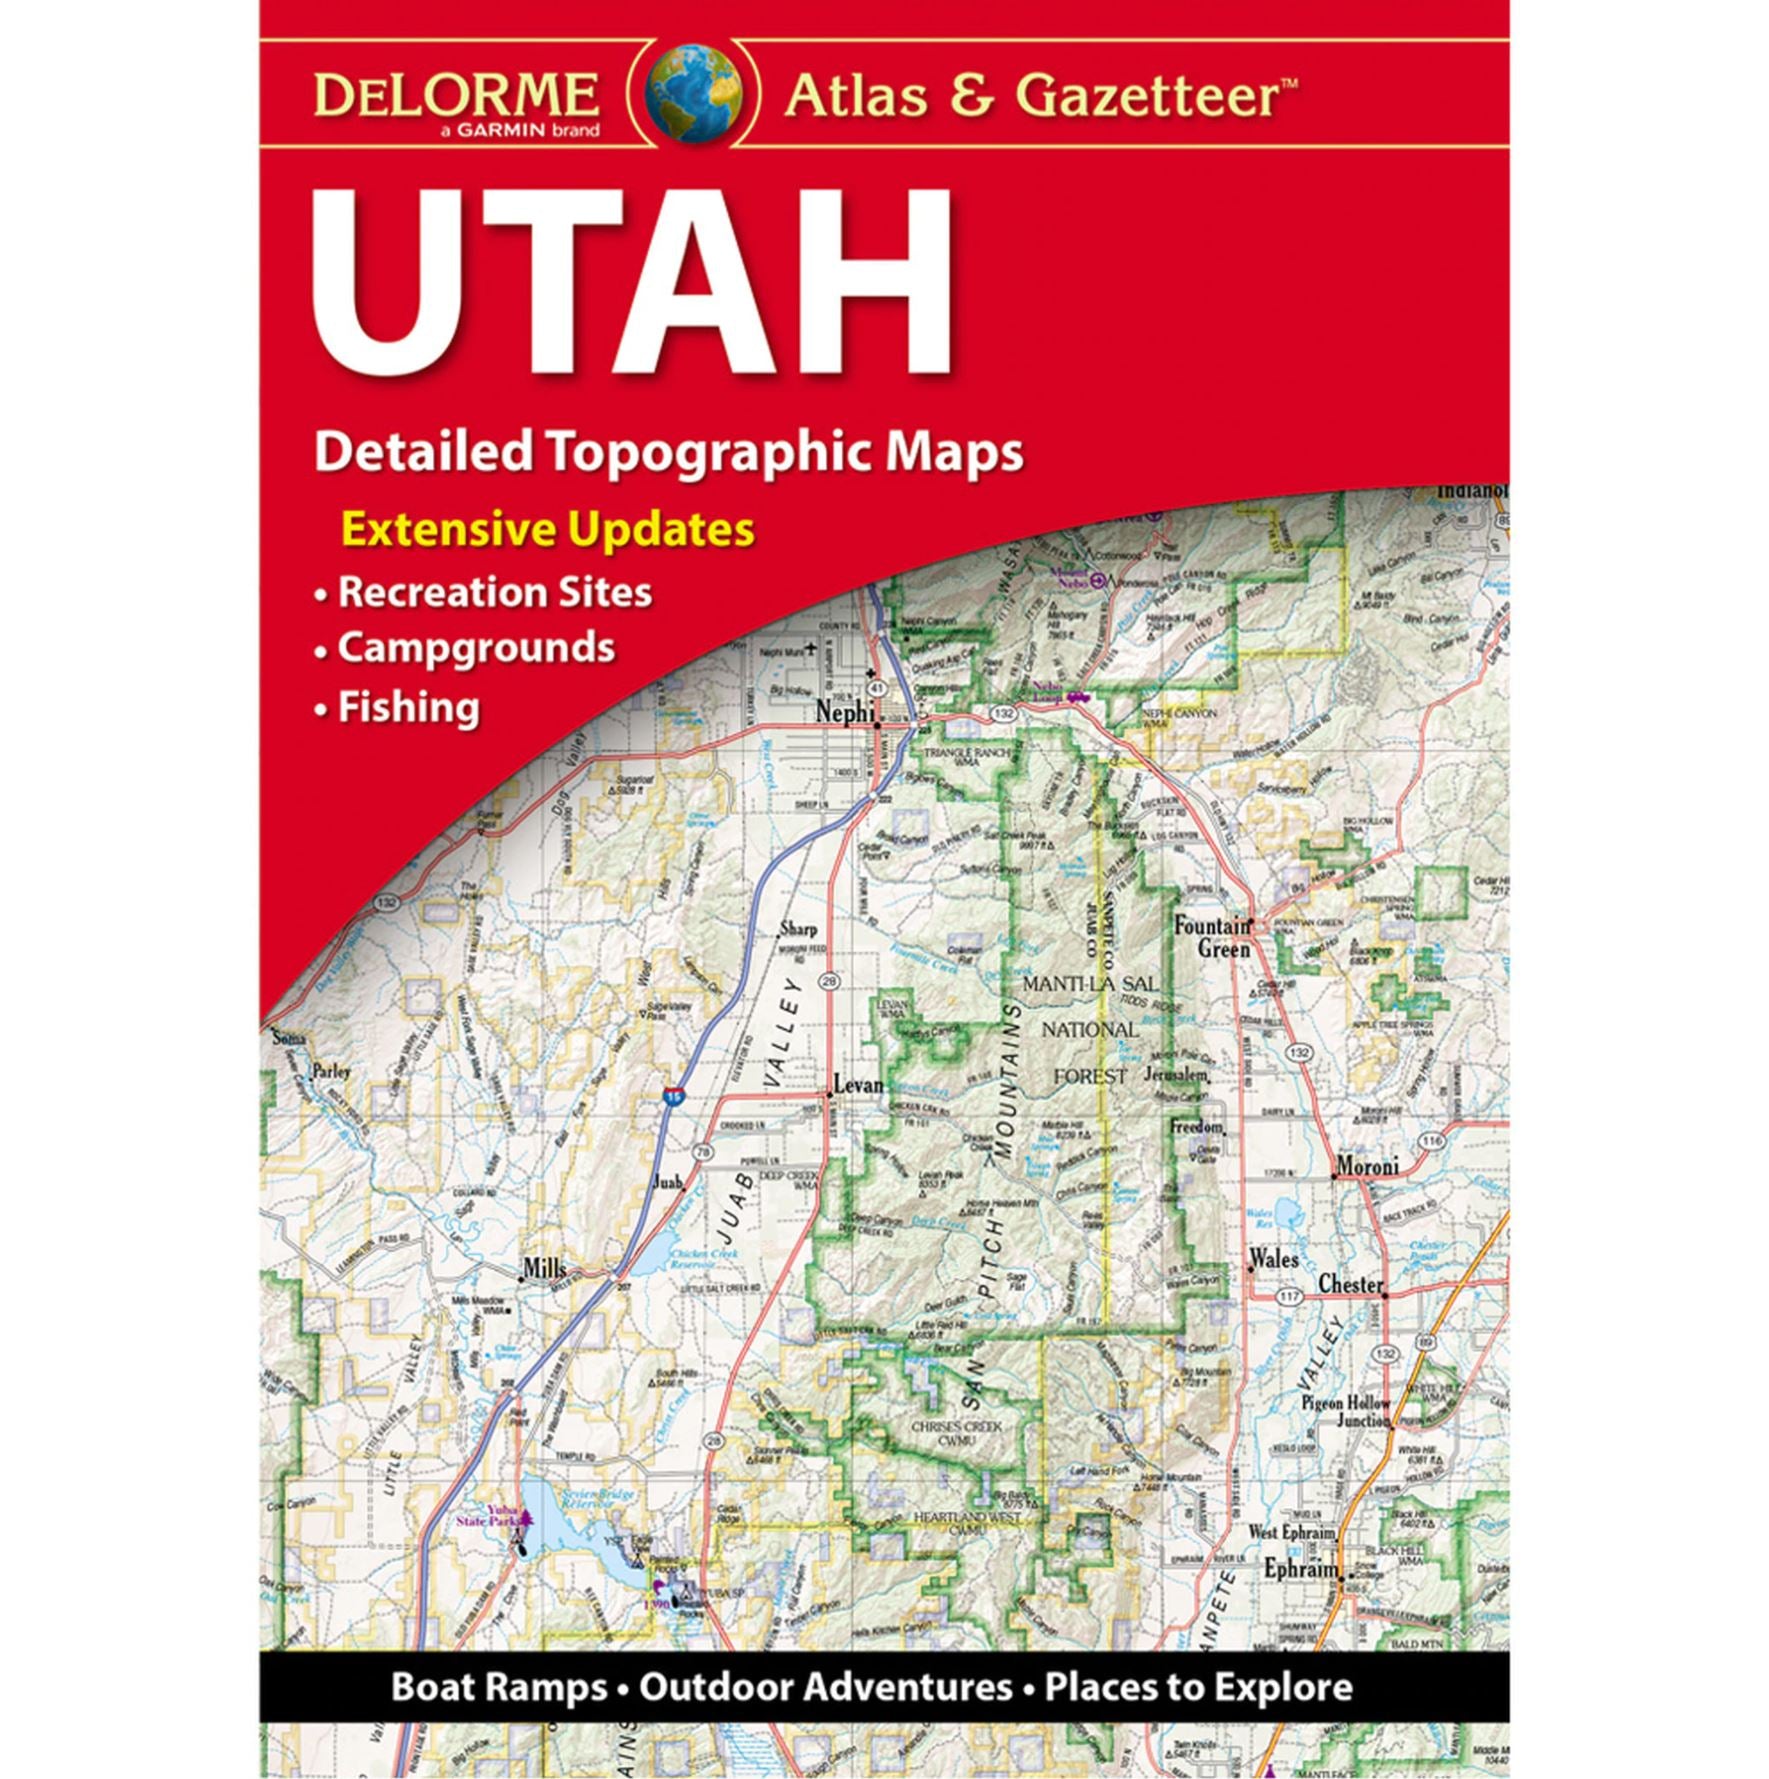 the utah delorme atlas, cover image